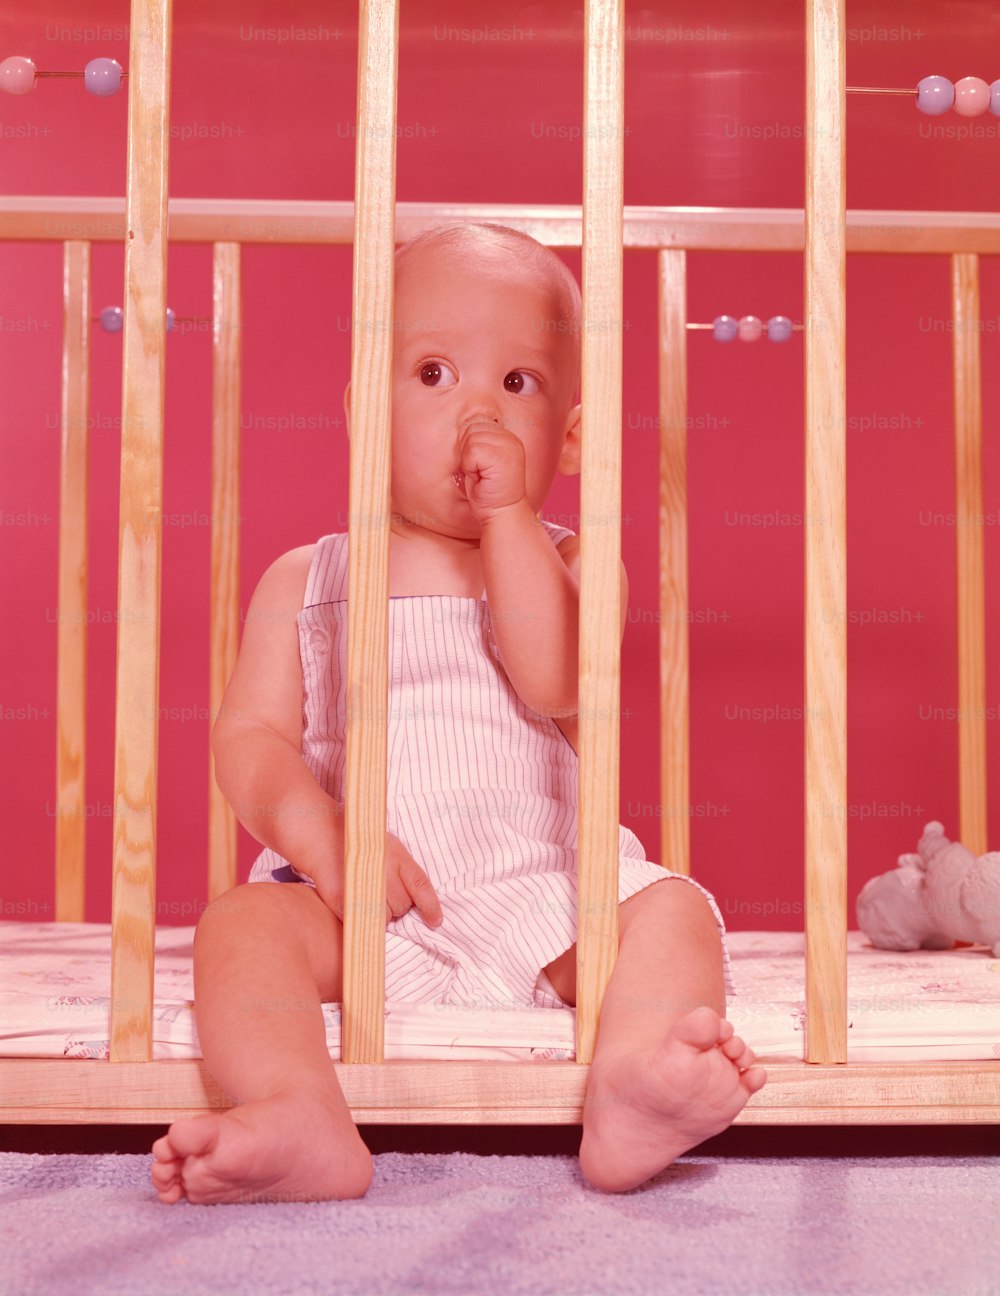 STATI UNITI - 1950 CIRCA: Bambino nel box, succhia il pollice.